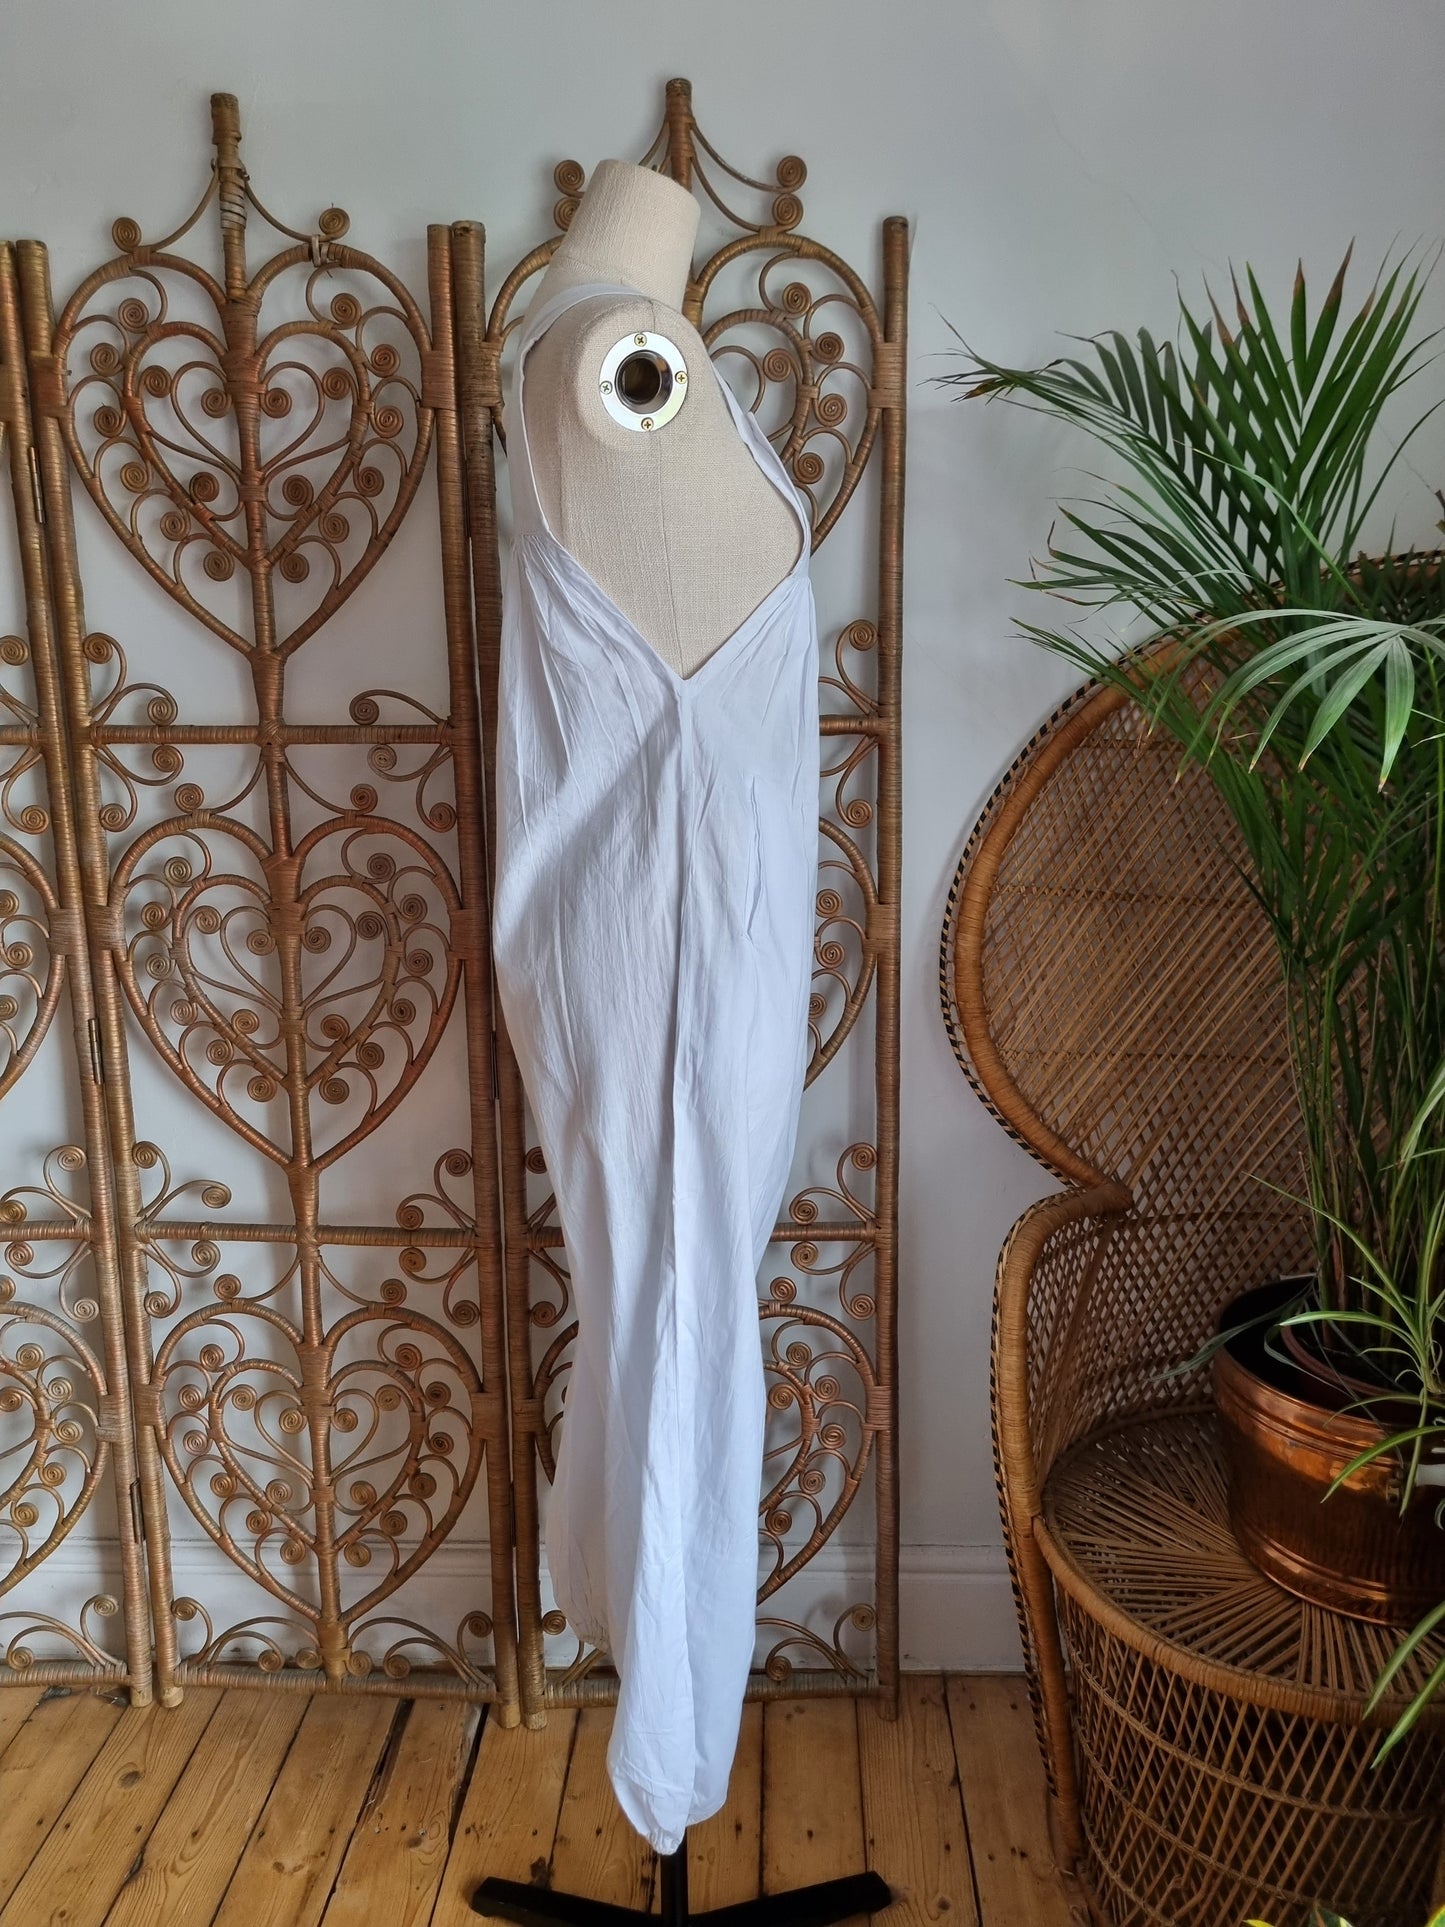 Vintage white cotton jumpsuit